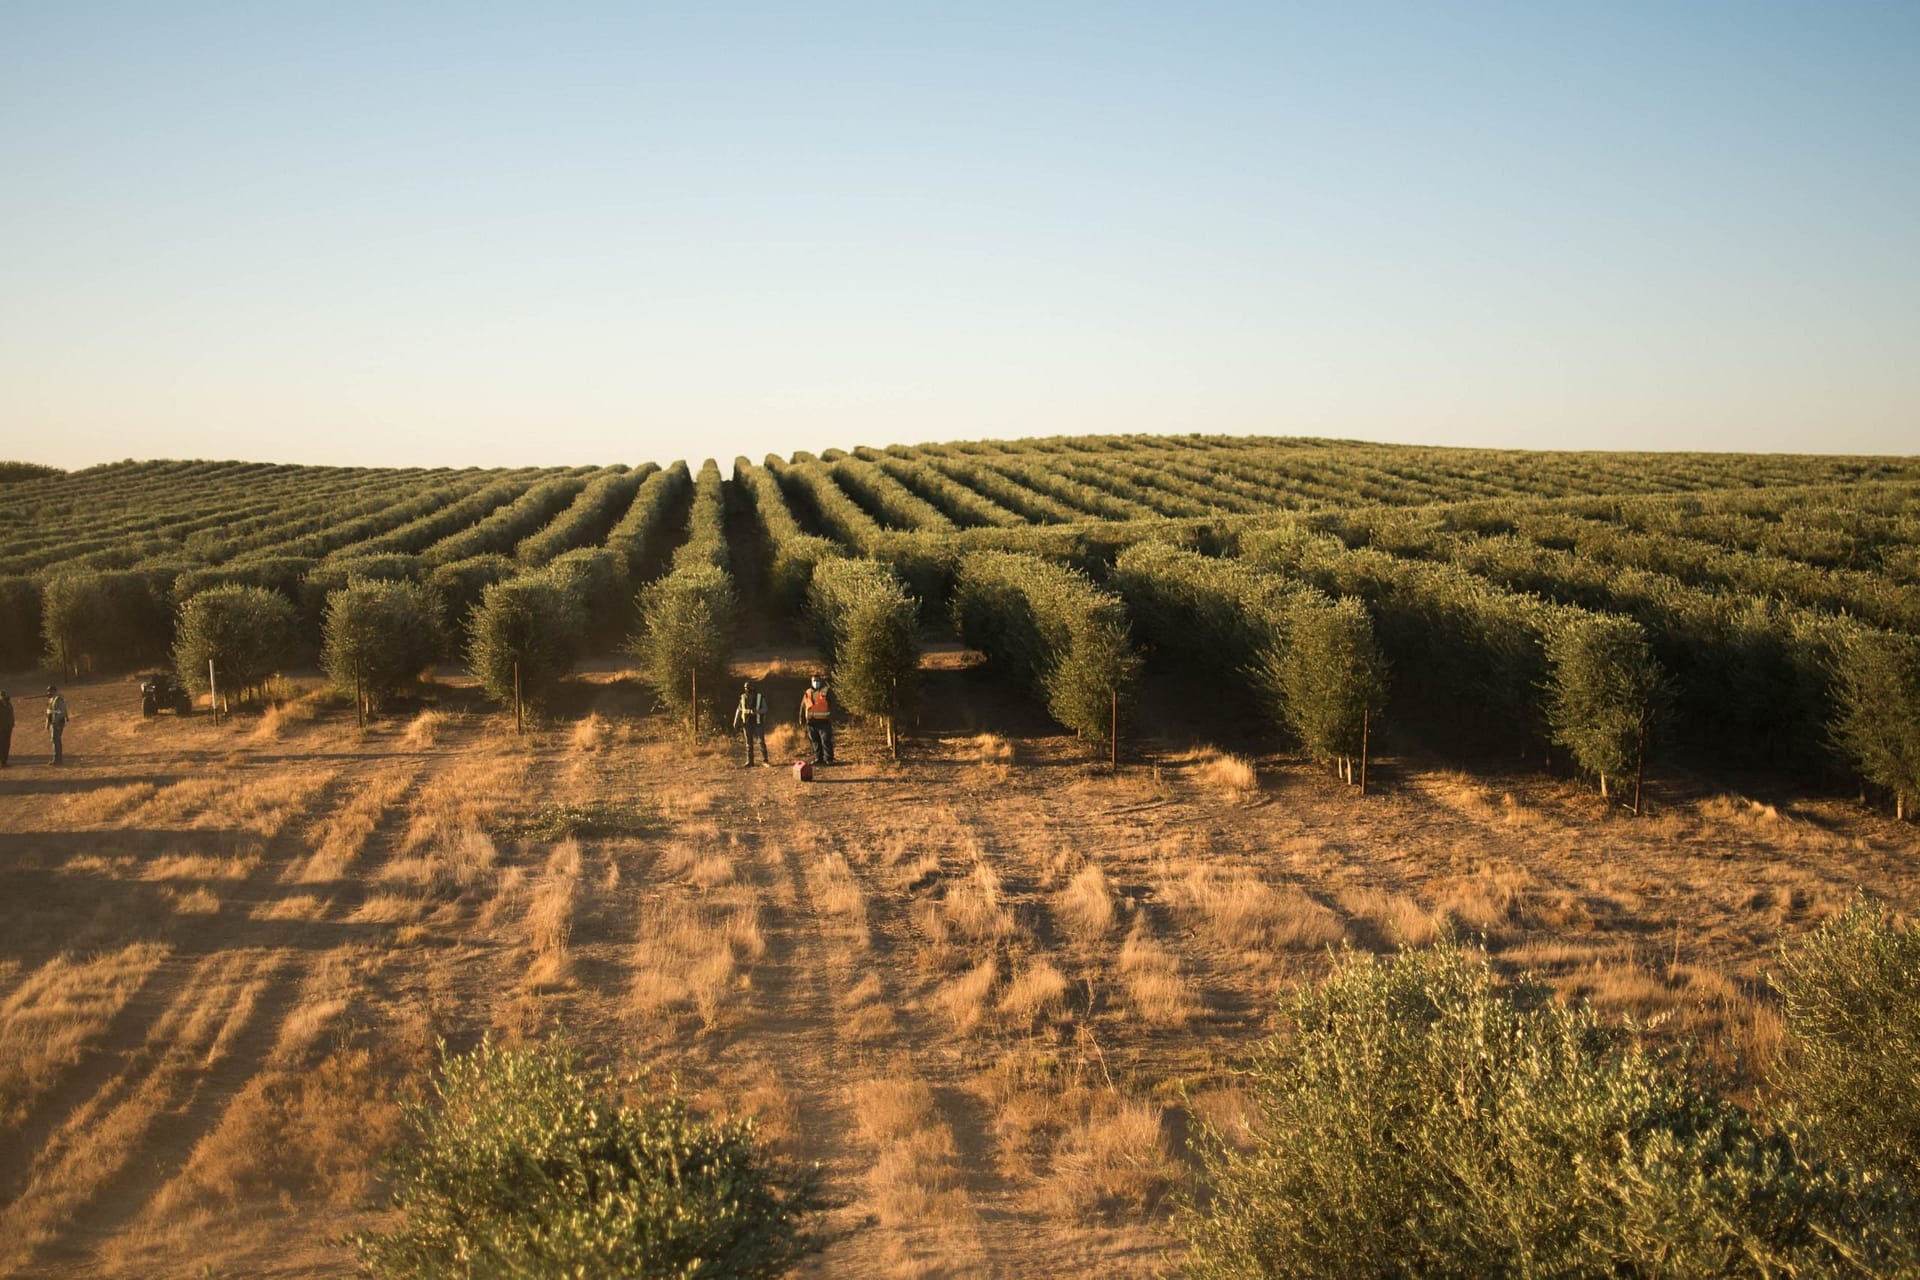 Noord-Amerika-de-beste-olijfolie-competities-productie-Californiërs-navigeren-een-uitdagende-oogst-met-niet-aflatende-toewijding-aan-kwaliteit-olijfolie-tijden